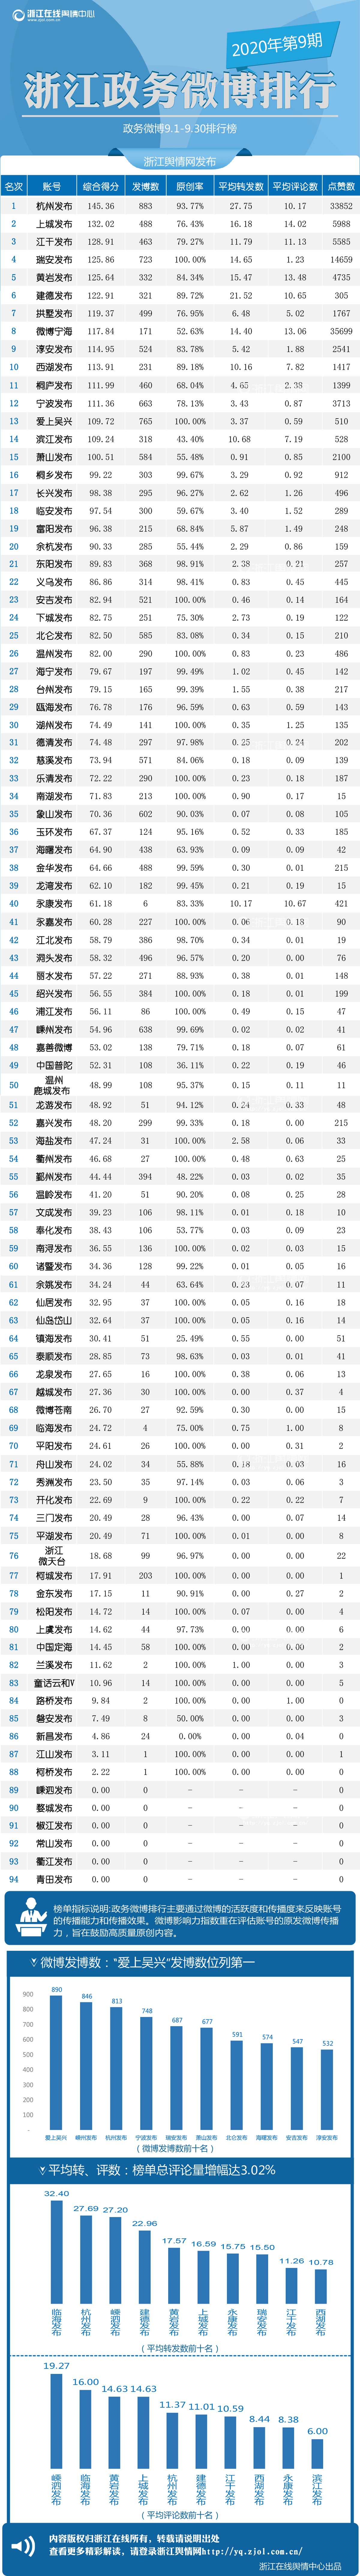 浙江政务微博排行（9月1日-9月30日）.png